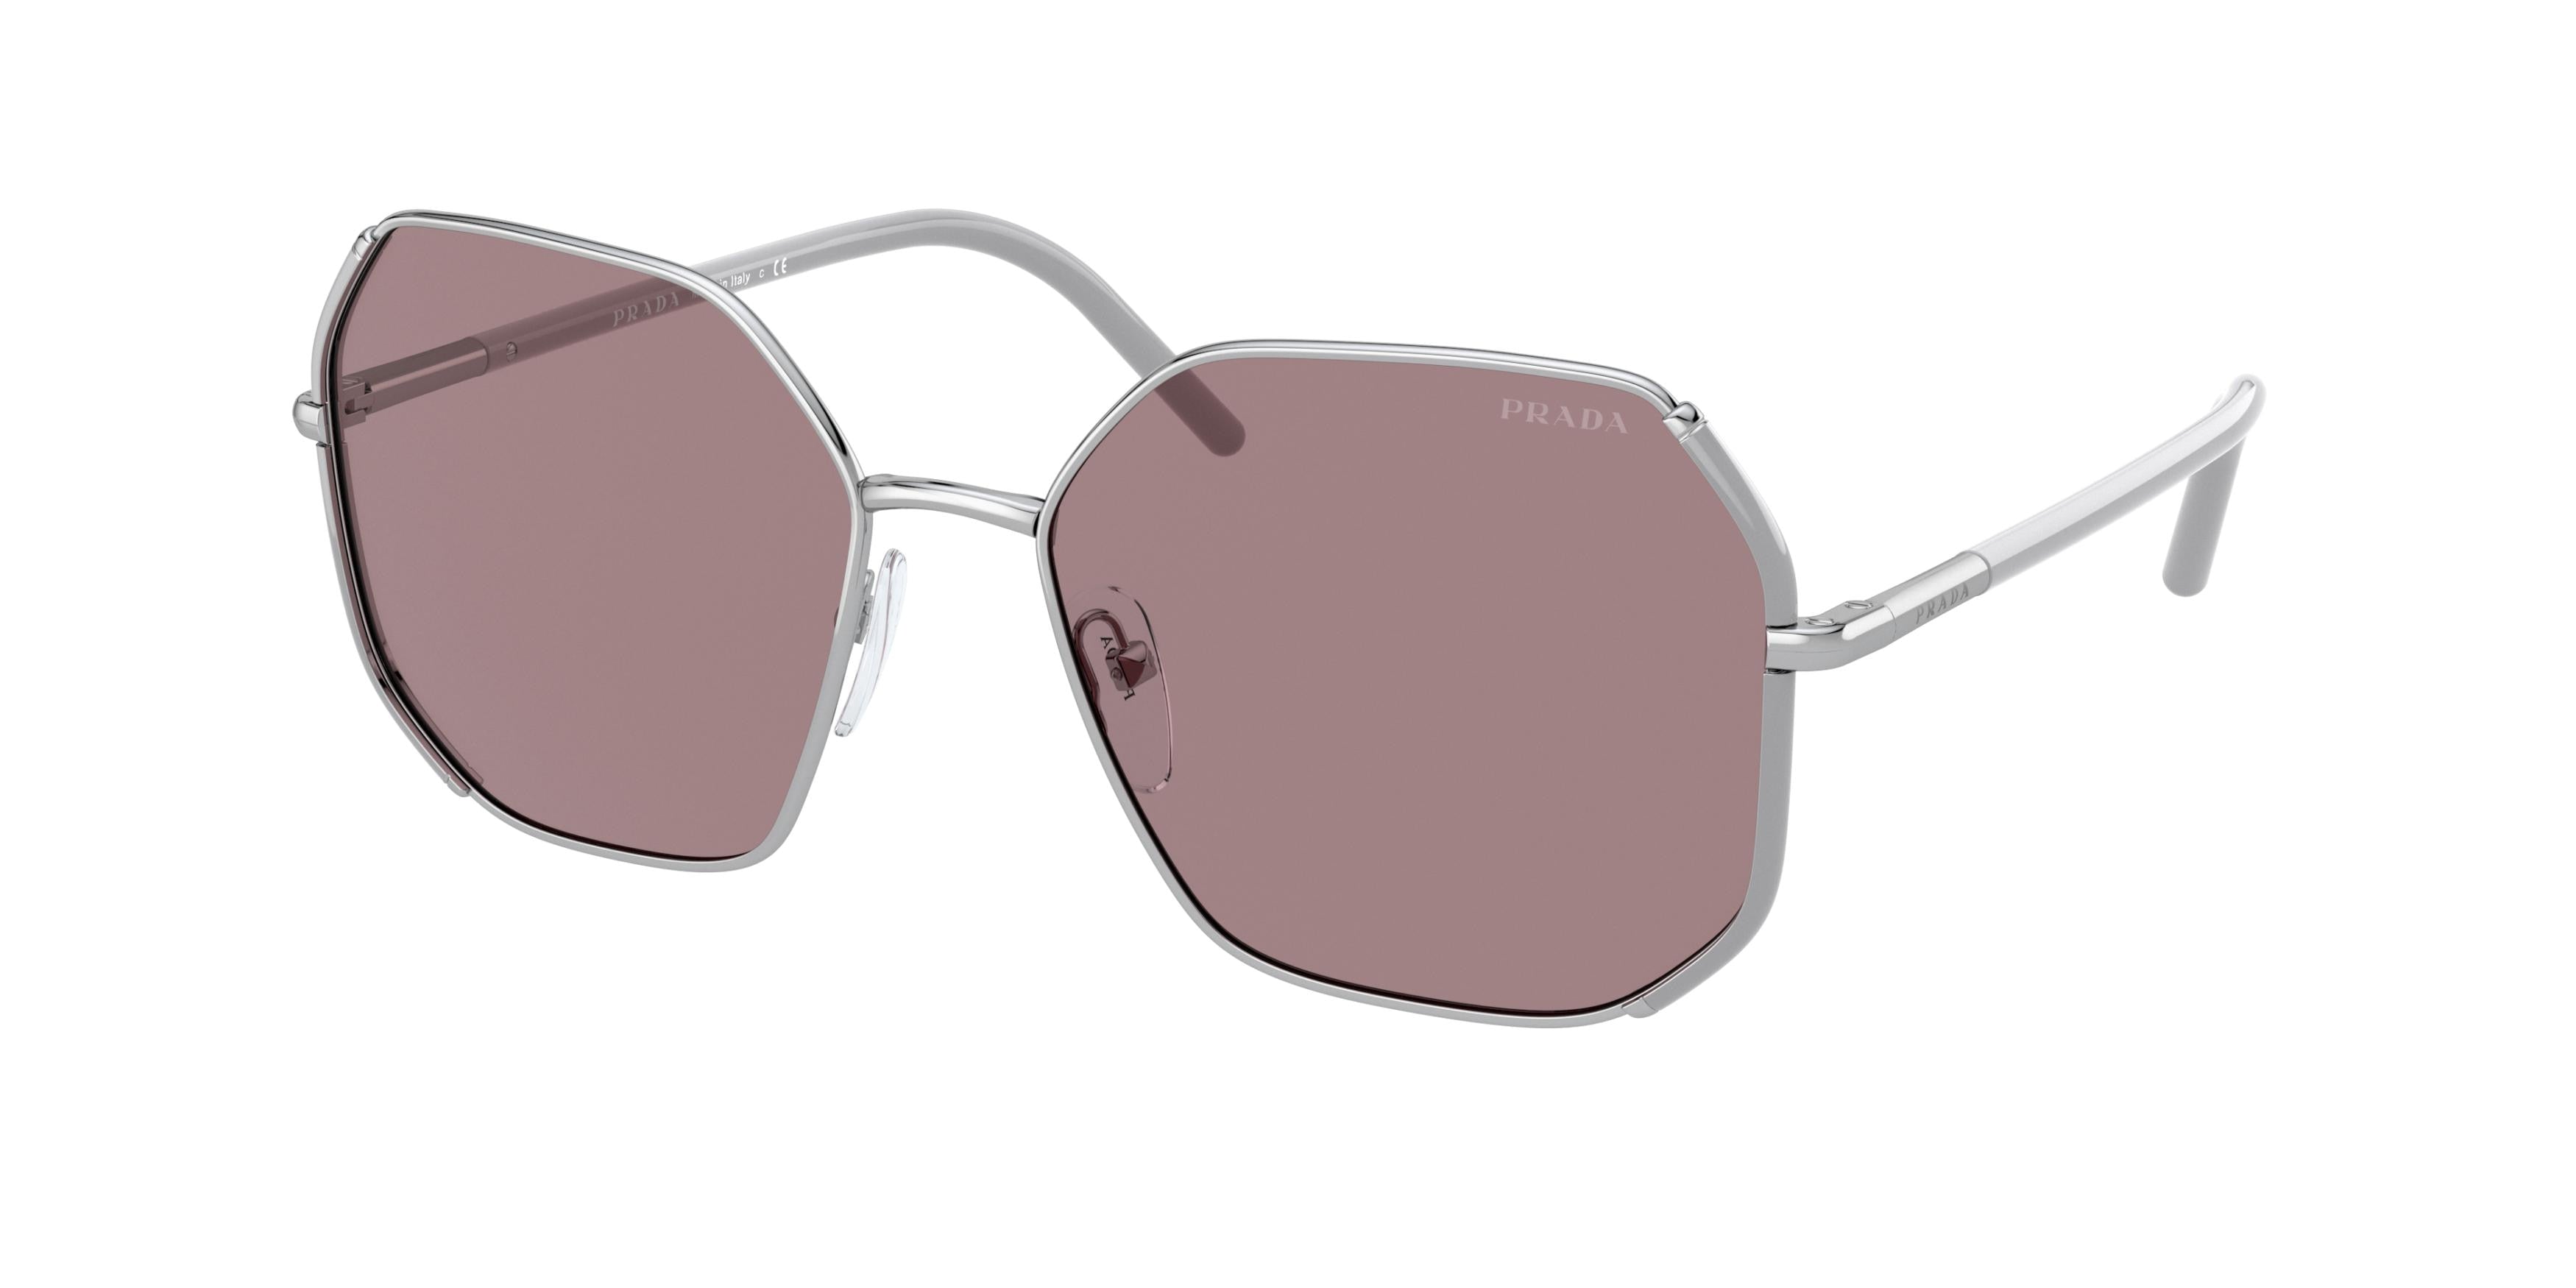 Prada PR52WS Irregular Sunglasses  08M06I-Mink/Silver 58-140-17 - Color Map Silver